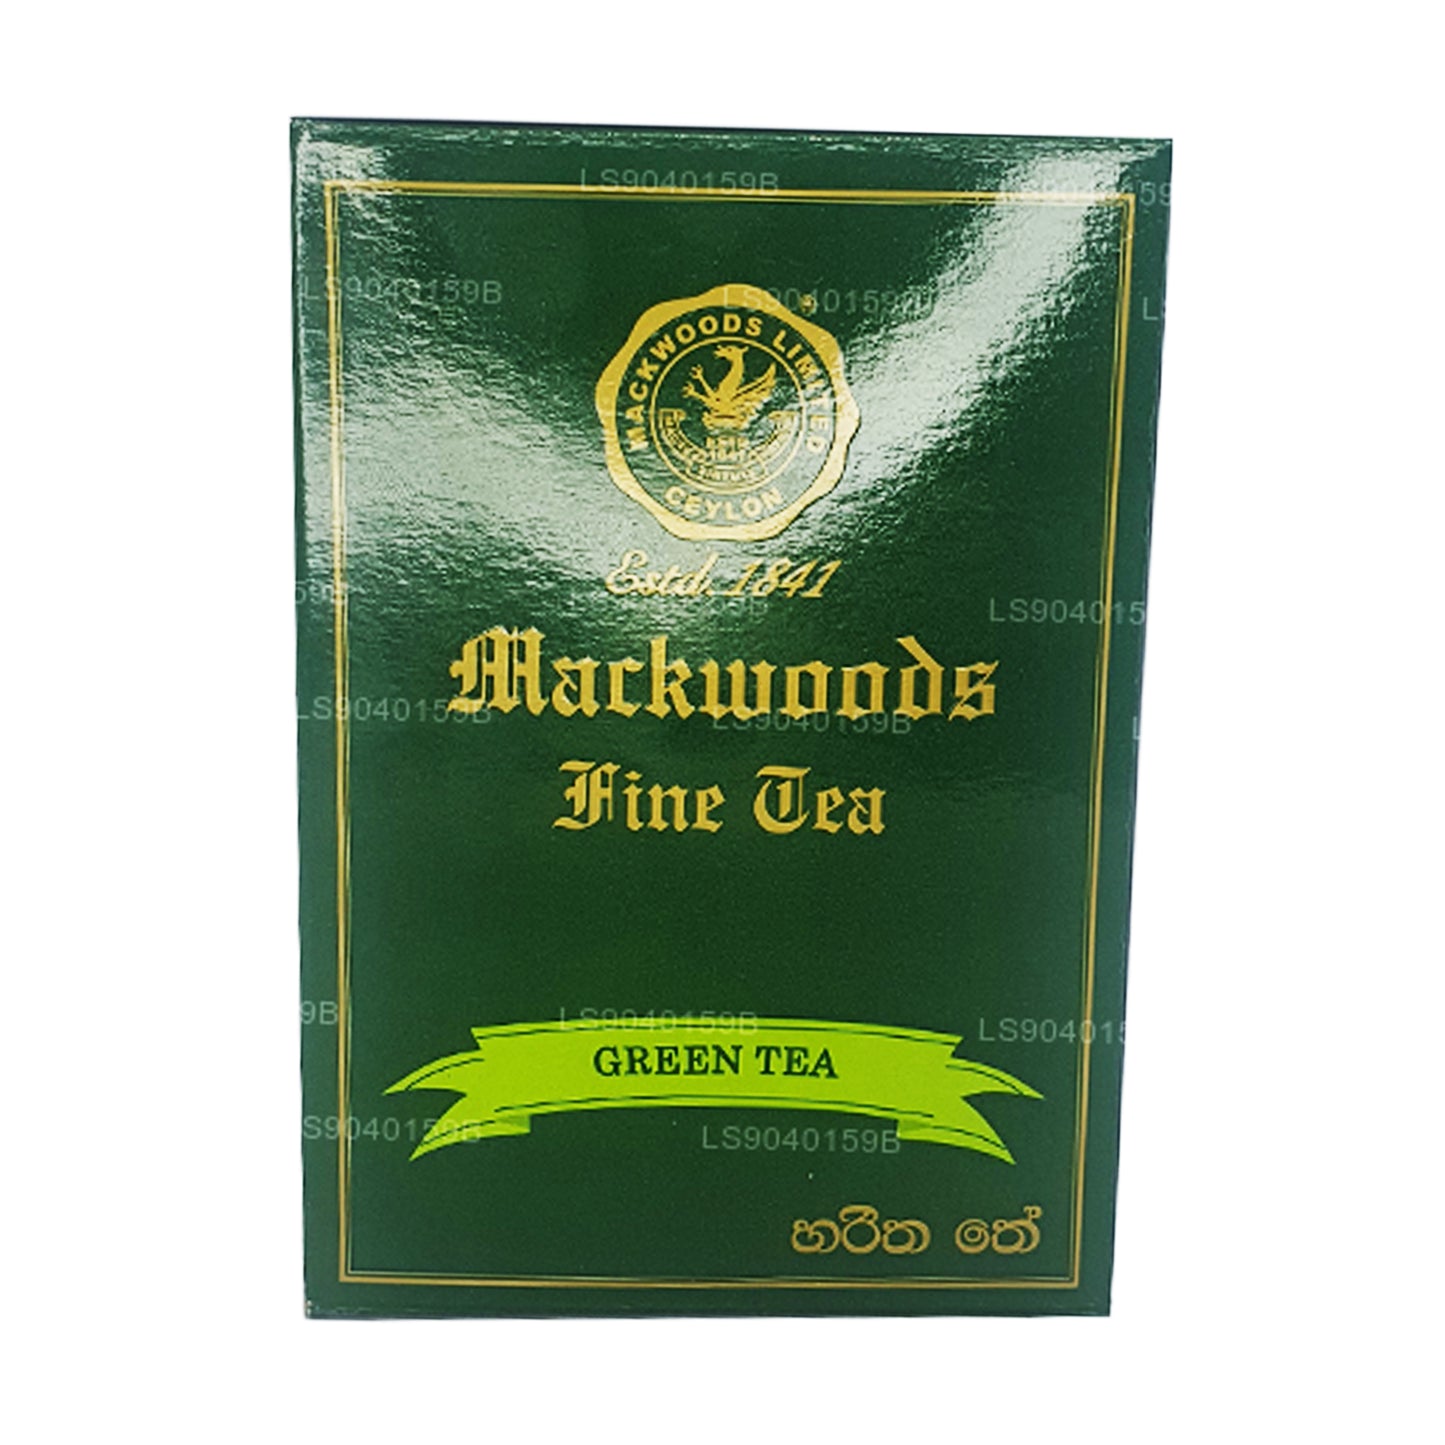 Mackwoods Lösblad Grönt Te (100g)